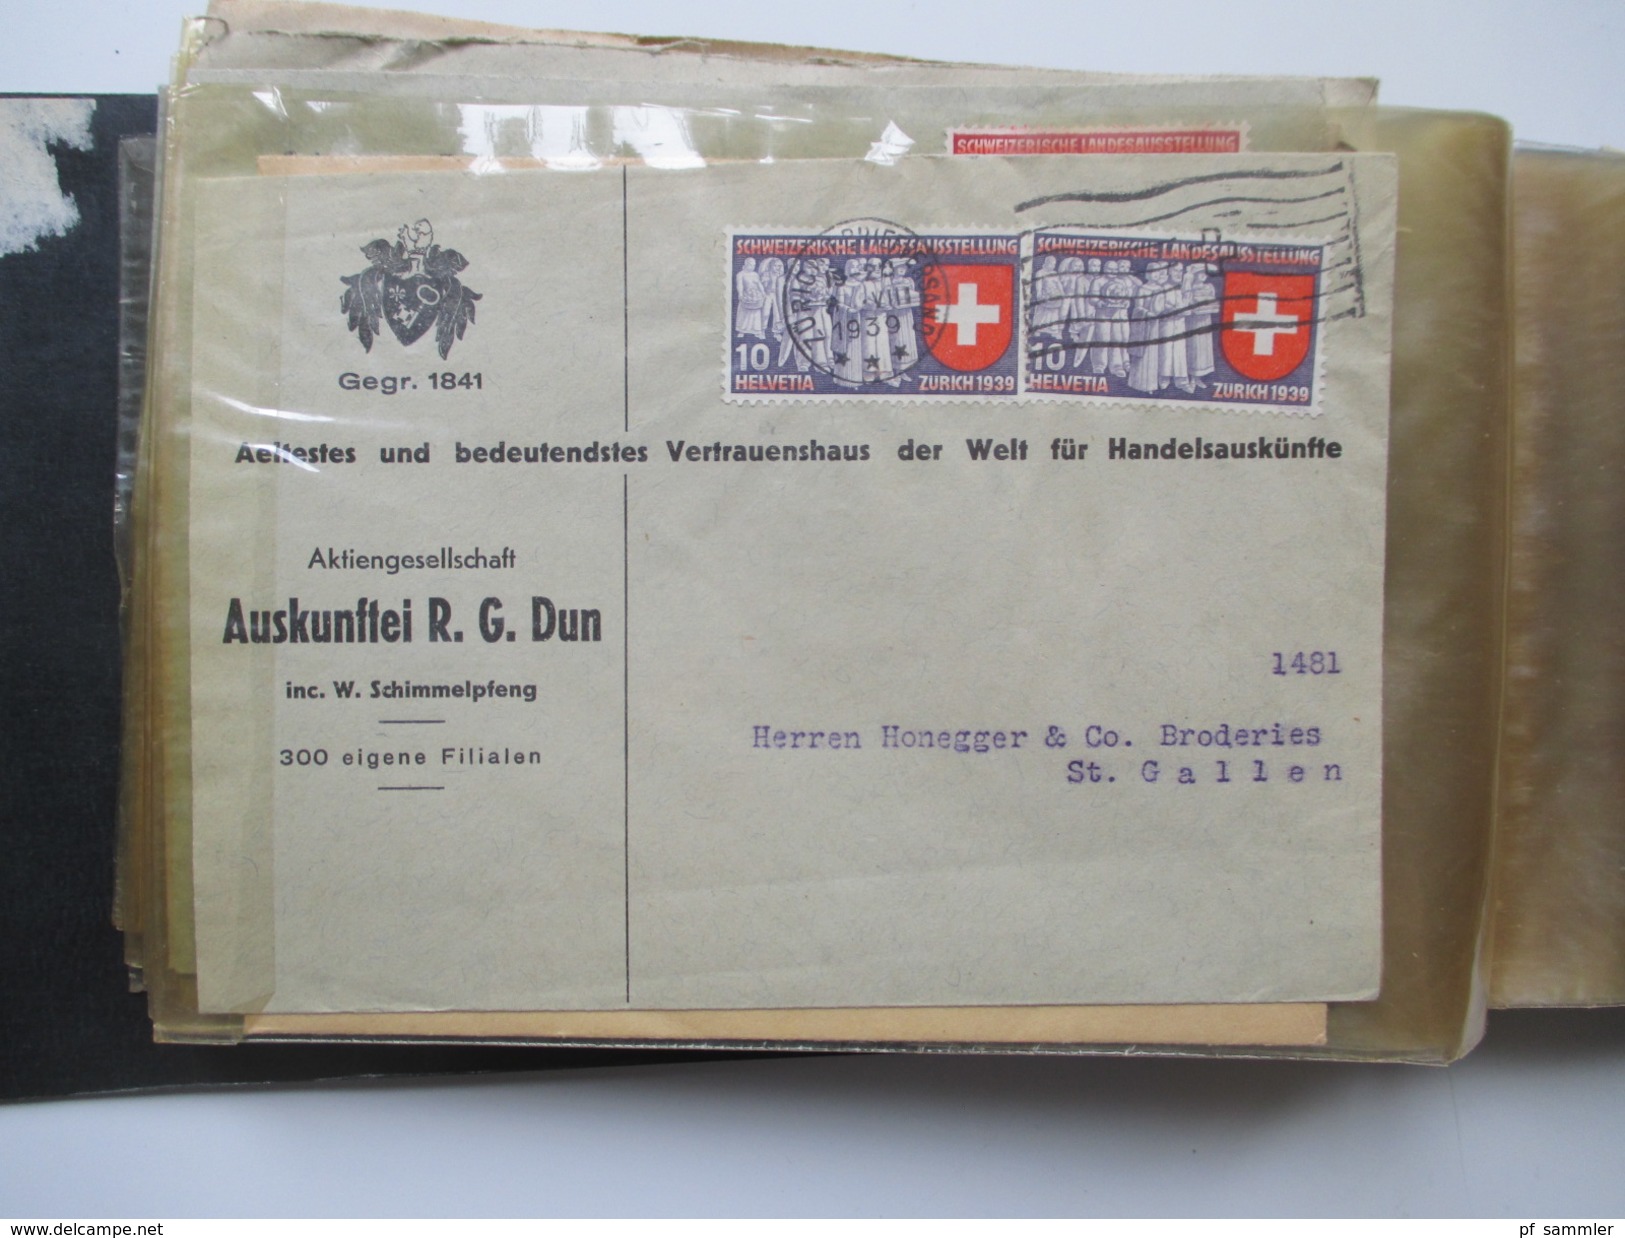 Schweiz 1917-1943 Belegesammlung 77 stk.Firmenbriefe / Weberei / Spinnerei / Baumwolle usw. Korrespondenz! Pro Juventute